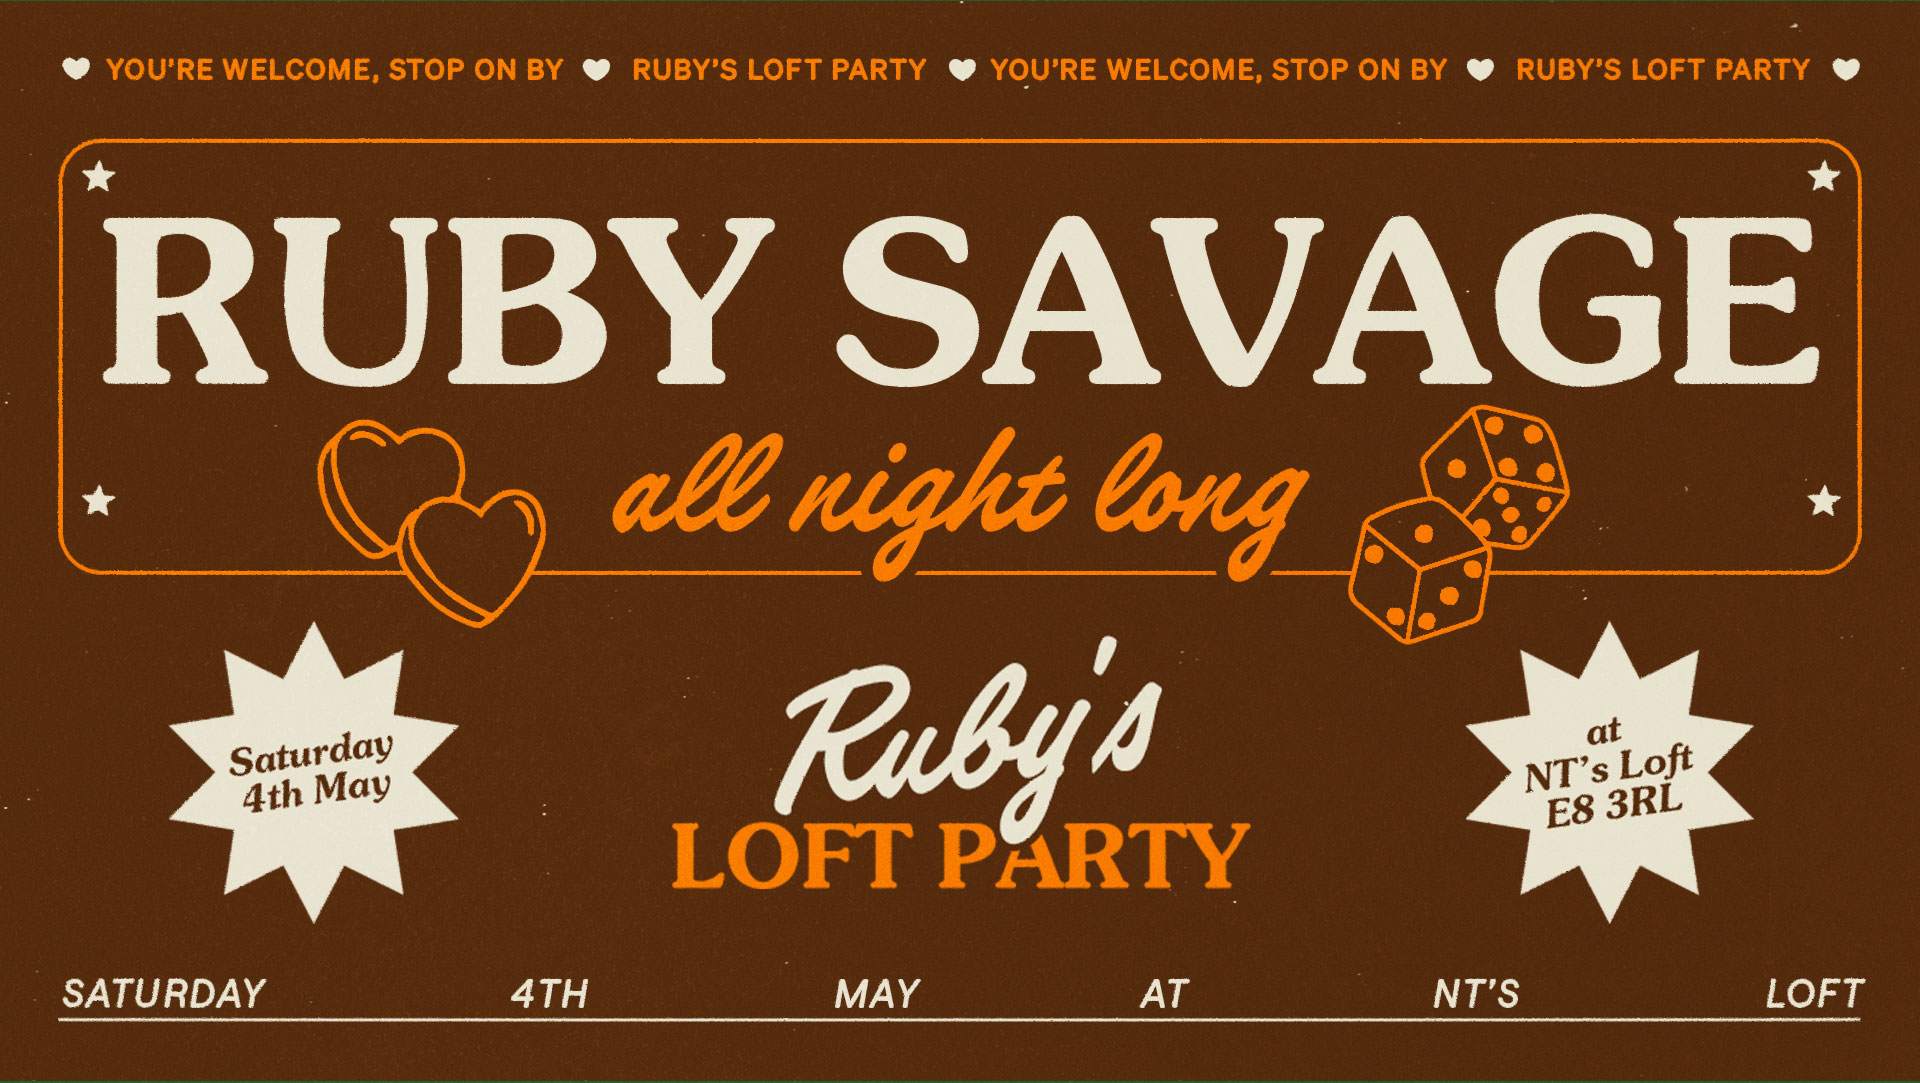 NT's Loft: Ruby Savage Residency - All Night Long - Week 1 - Página frontal